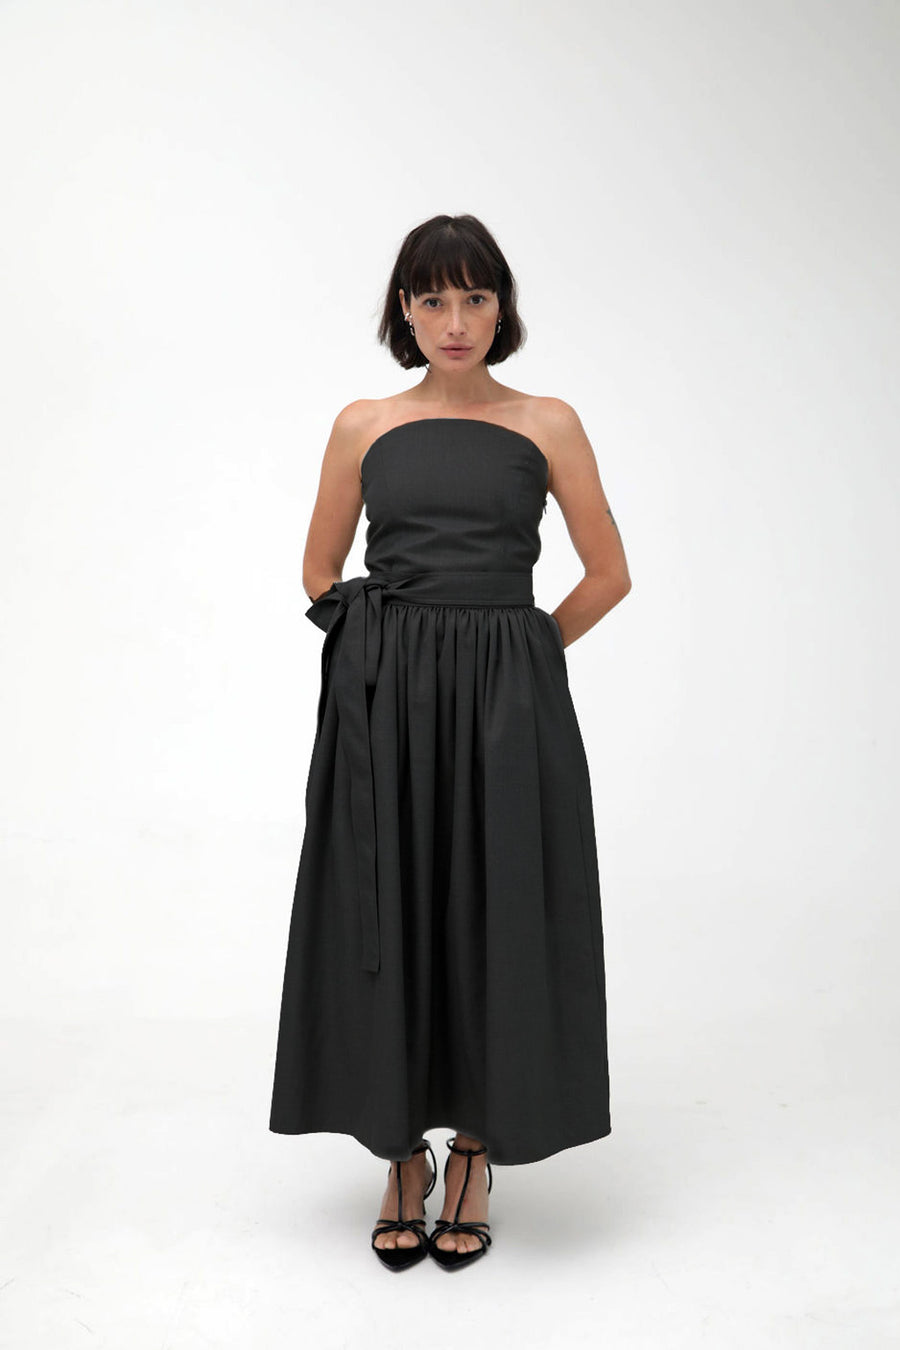 The Twill Midi Skirt